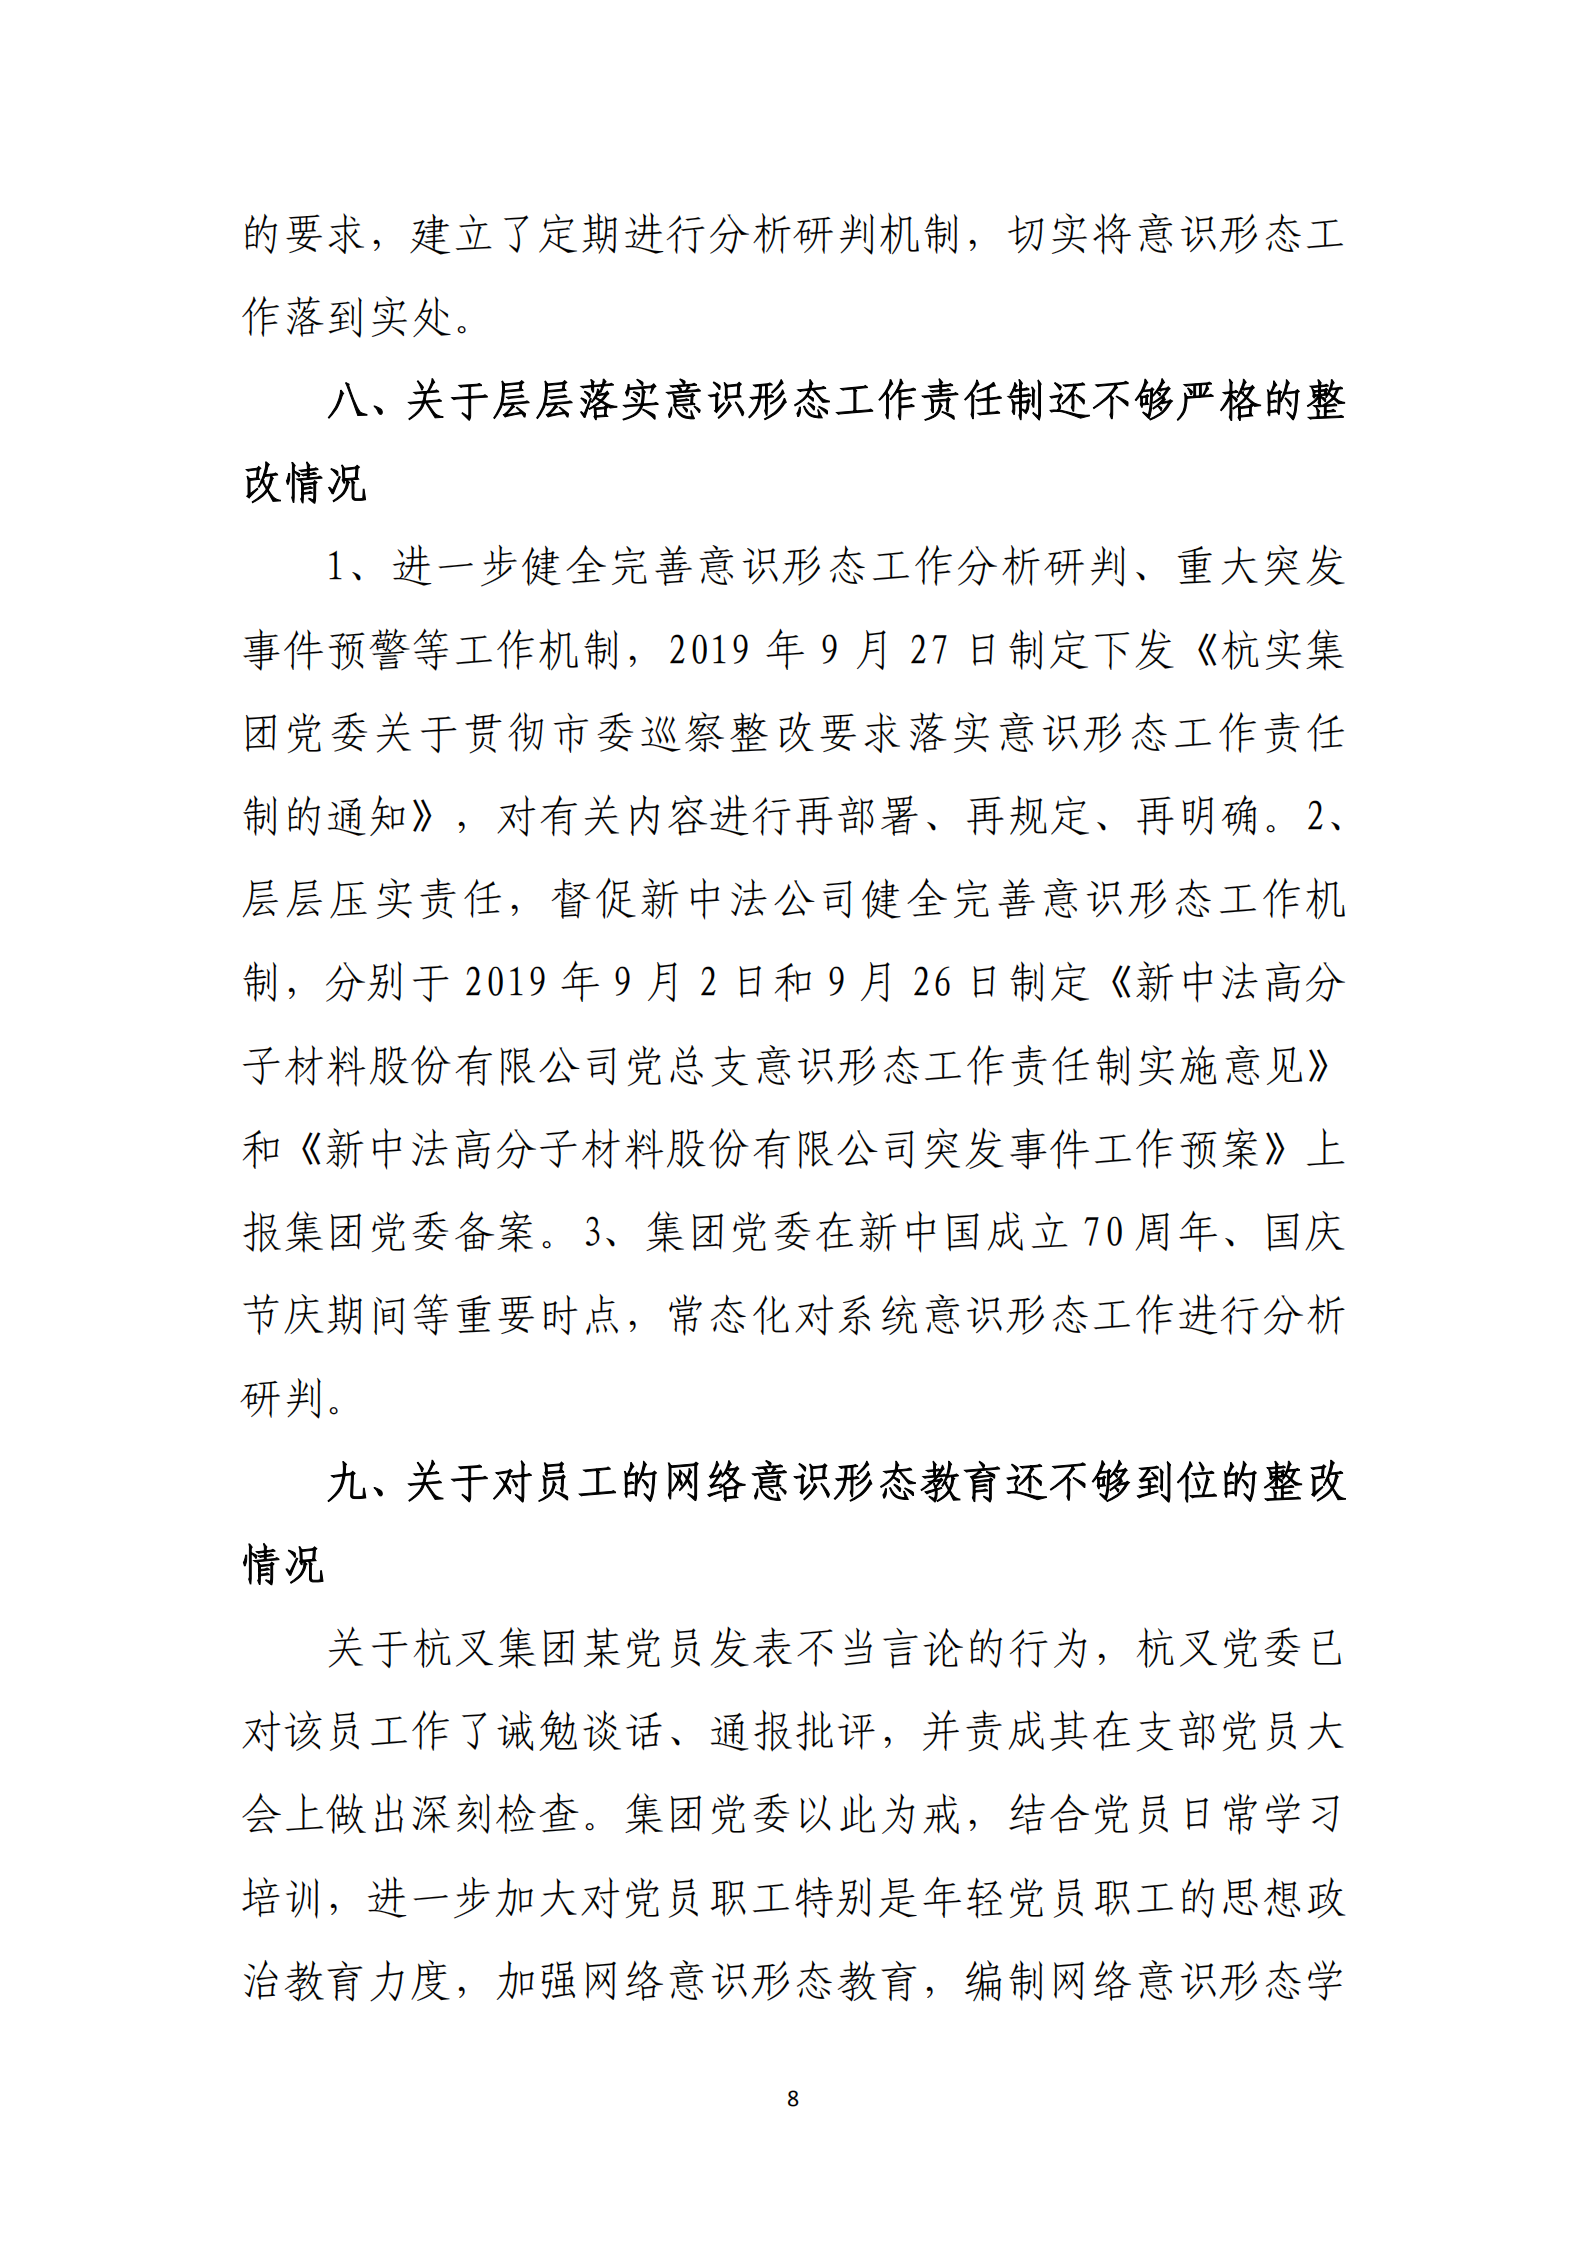 大阳城集团娱乐游戏党委关于巡察整改情况的通报_07.png